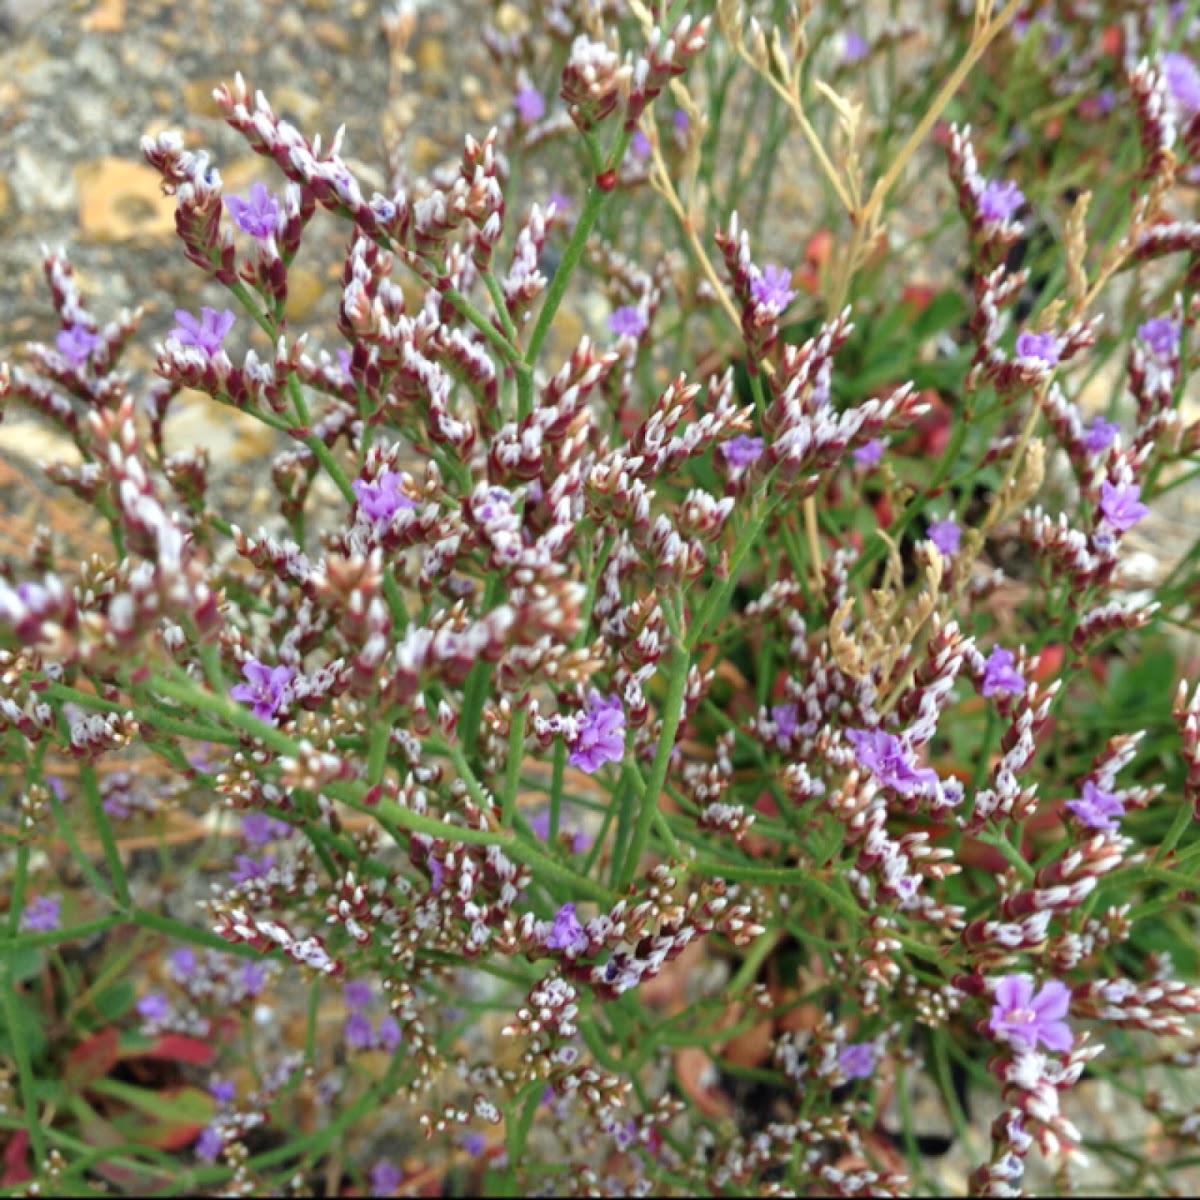 Common sea lavender